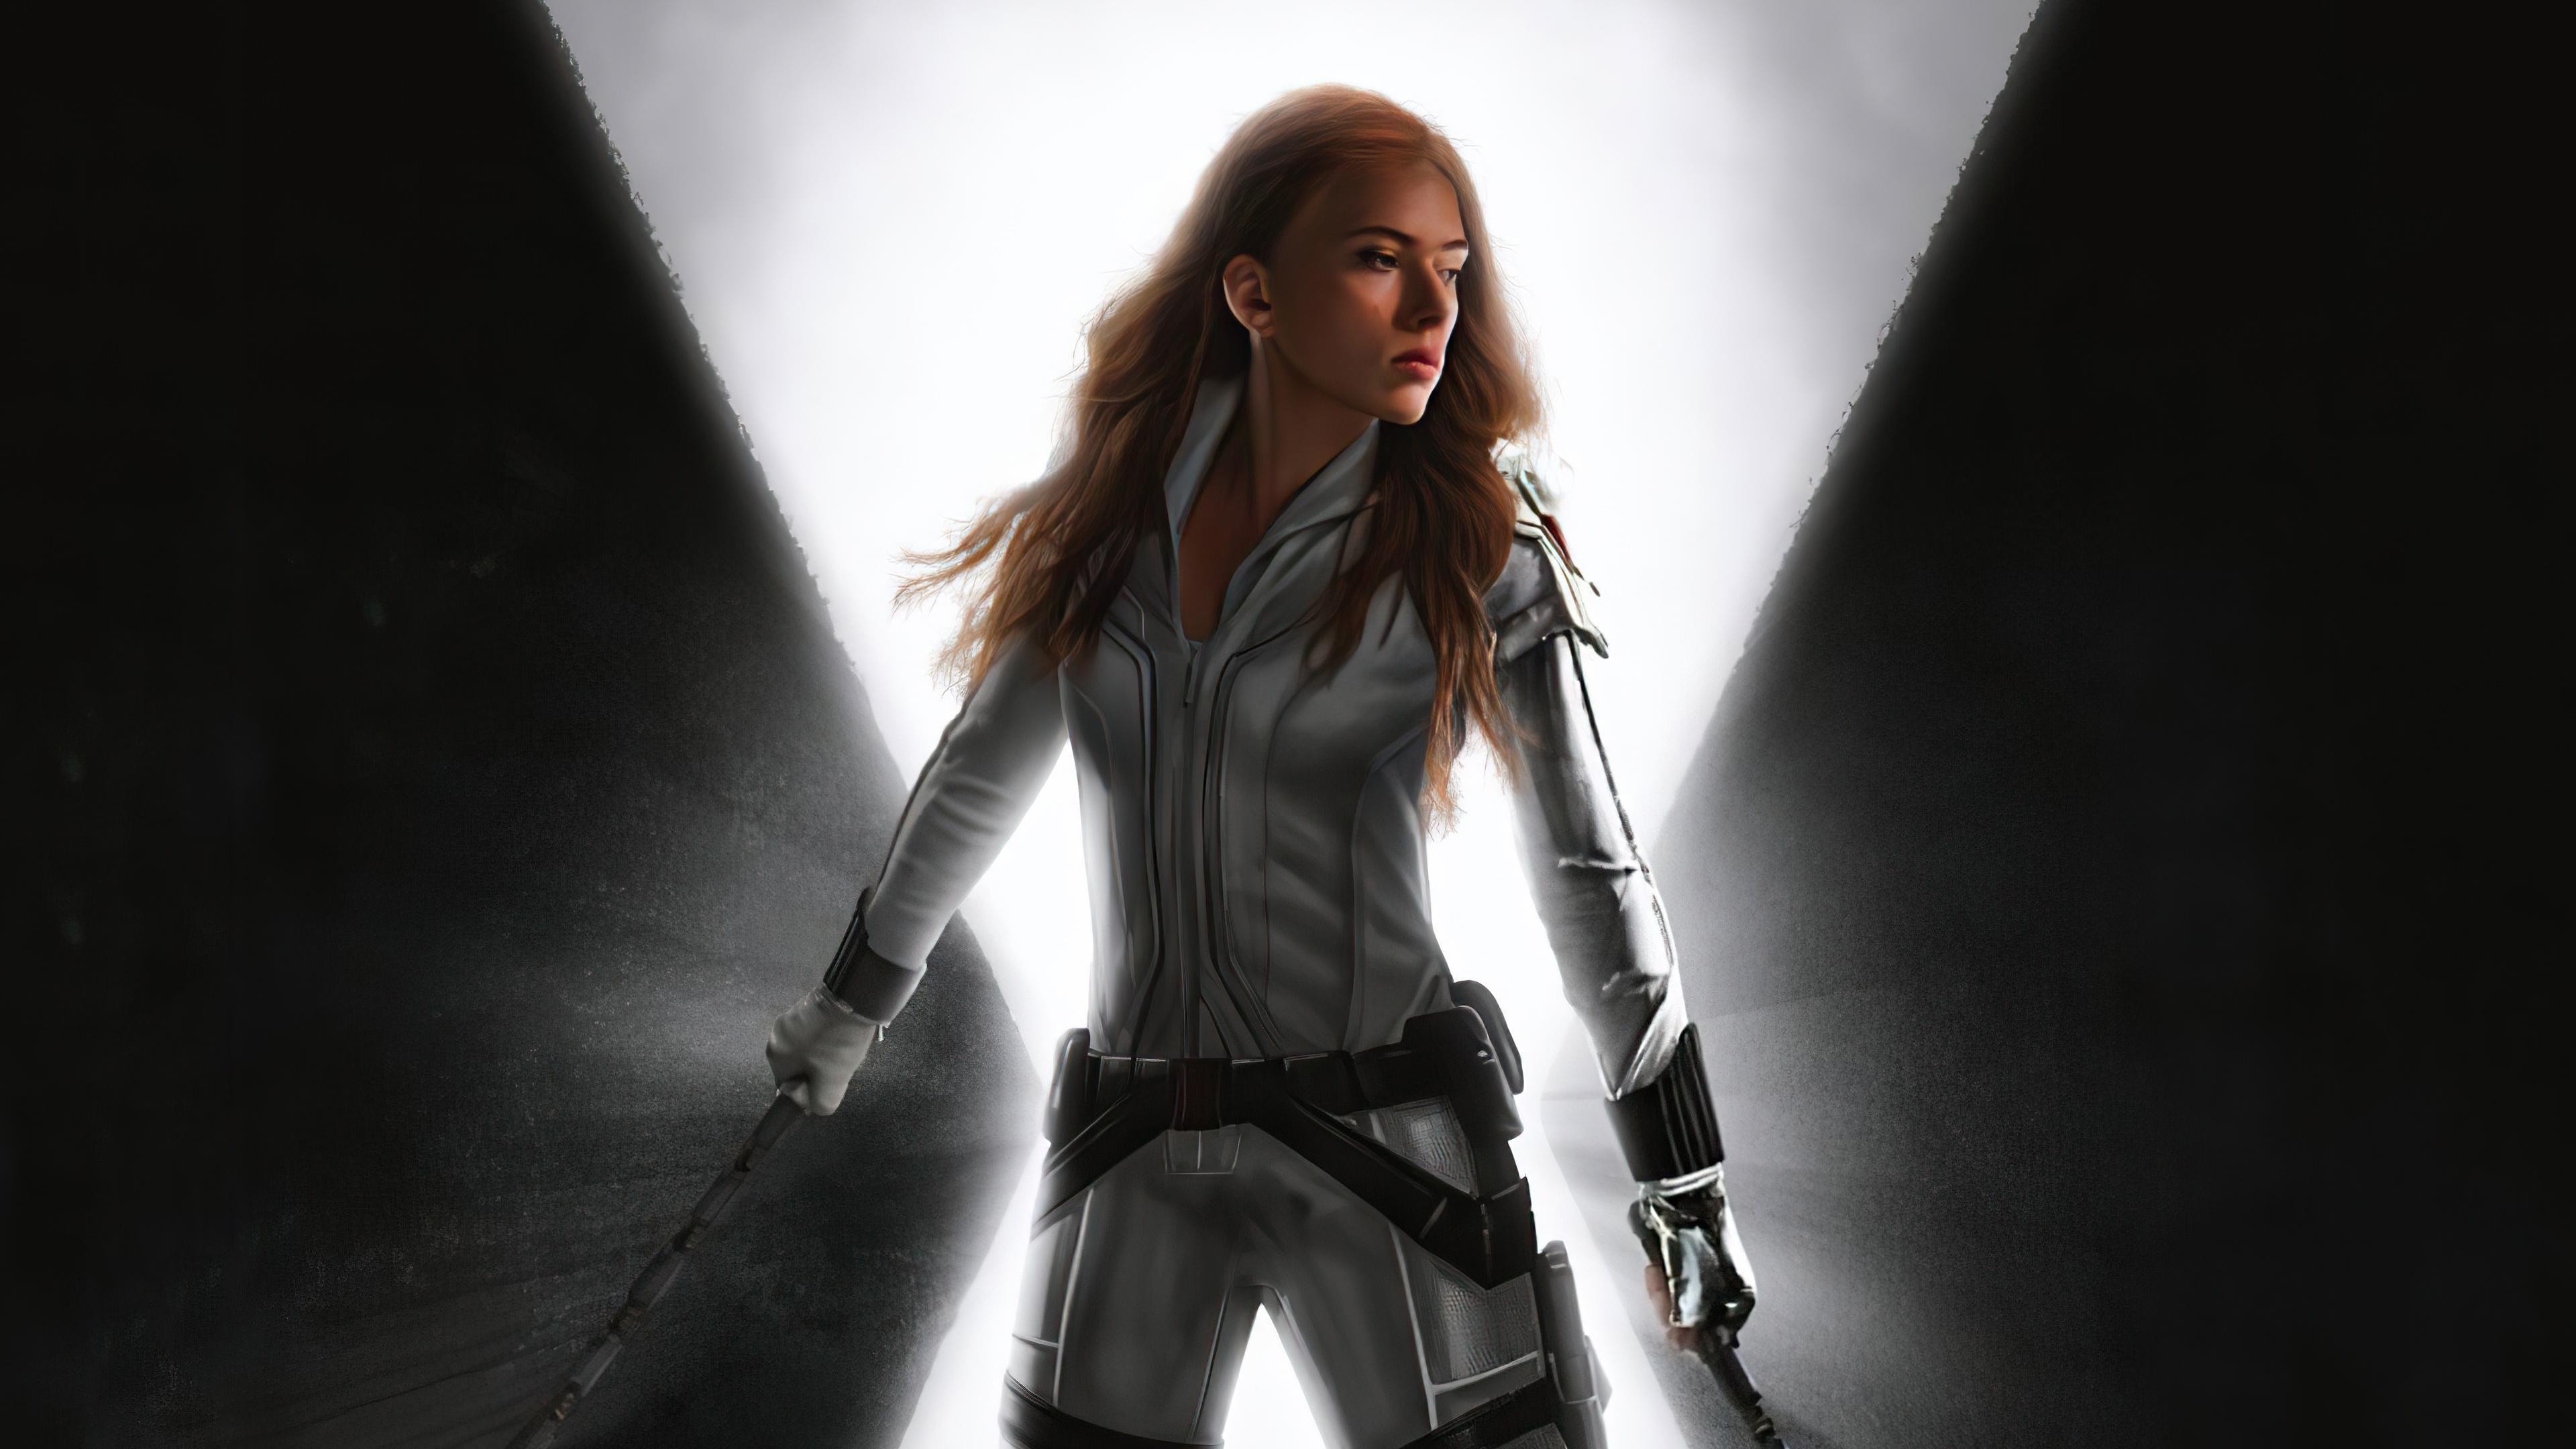 3840 x 2160 · jpeg - Movie Black Widow 2020 4k, HD Superheroes, 4k Wallpapers, Images ...